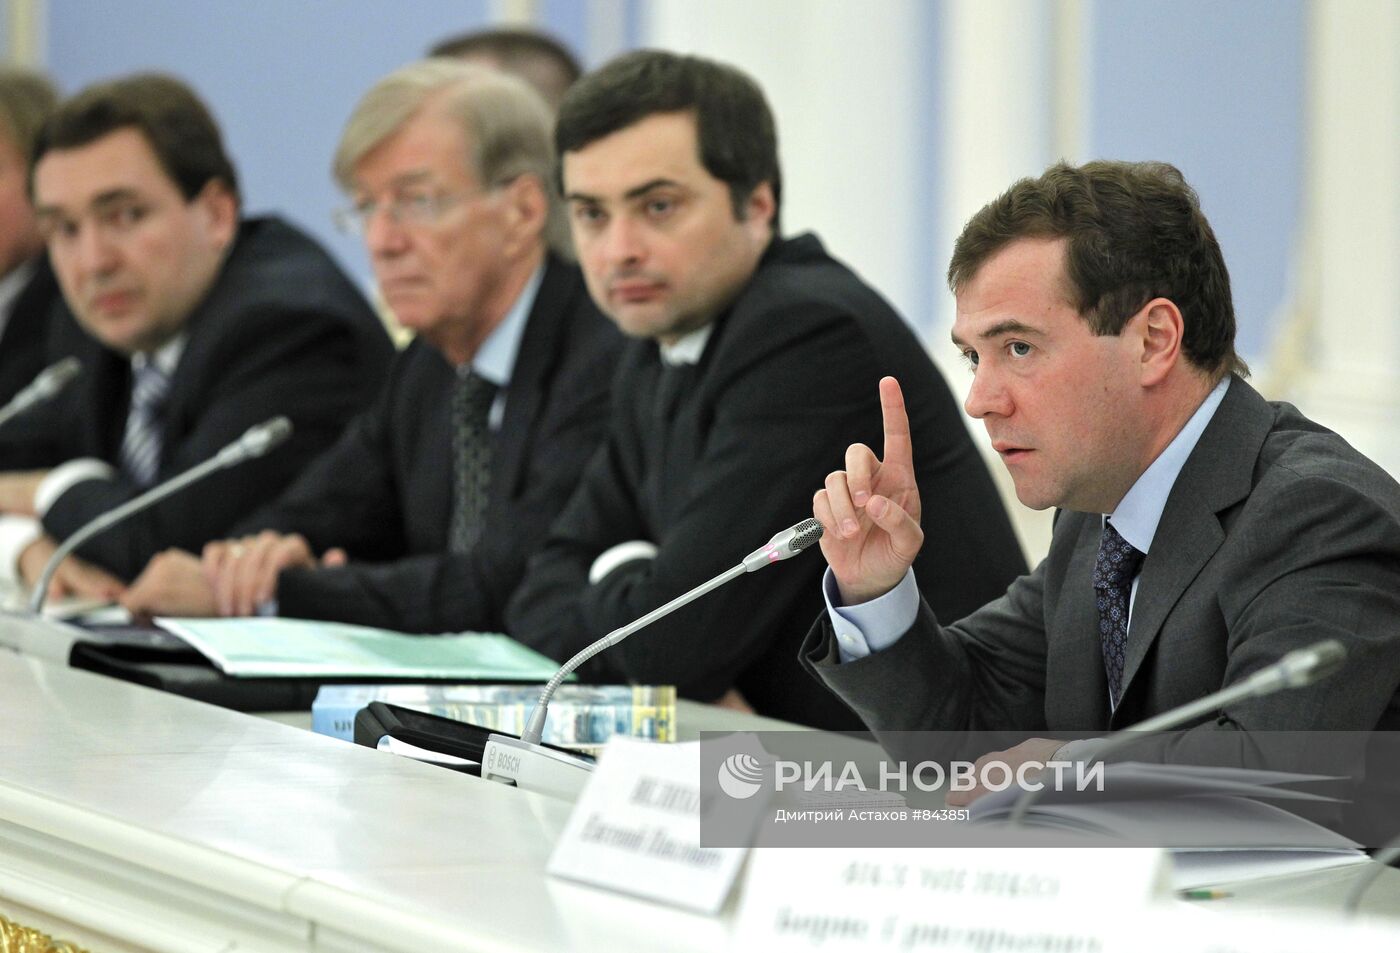 Д.Медведев провел встречу с членами Общественной палаты